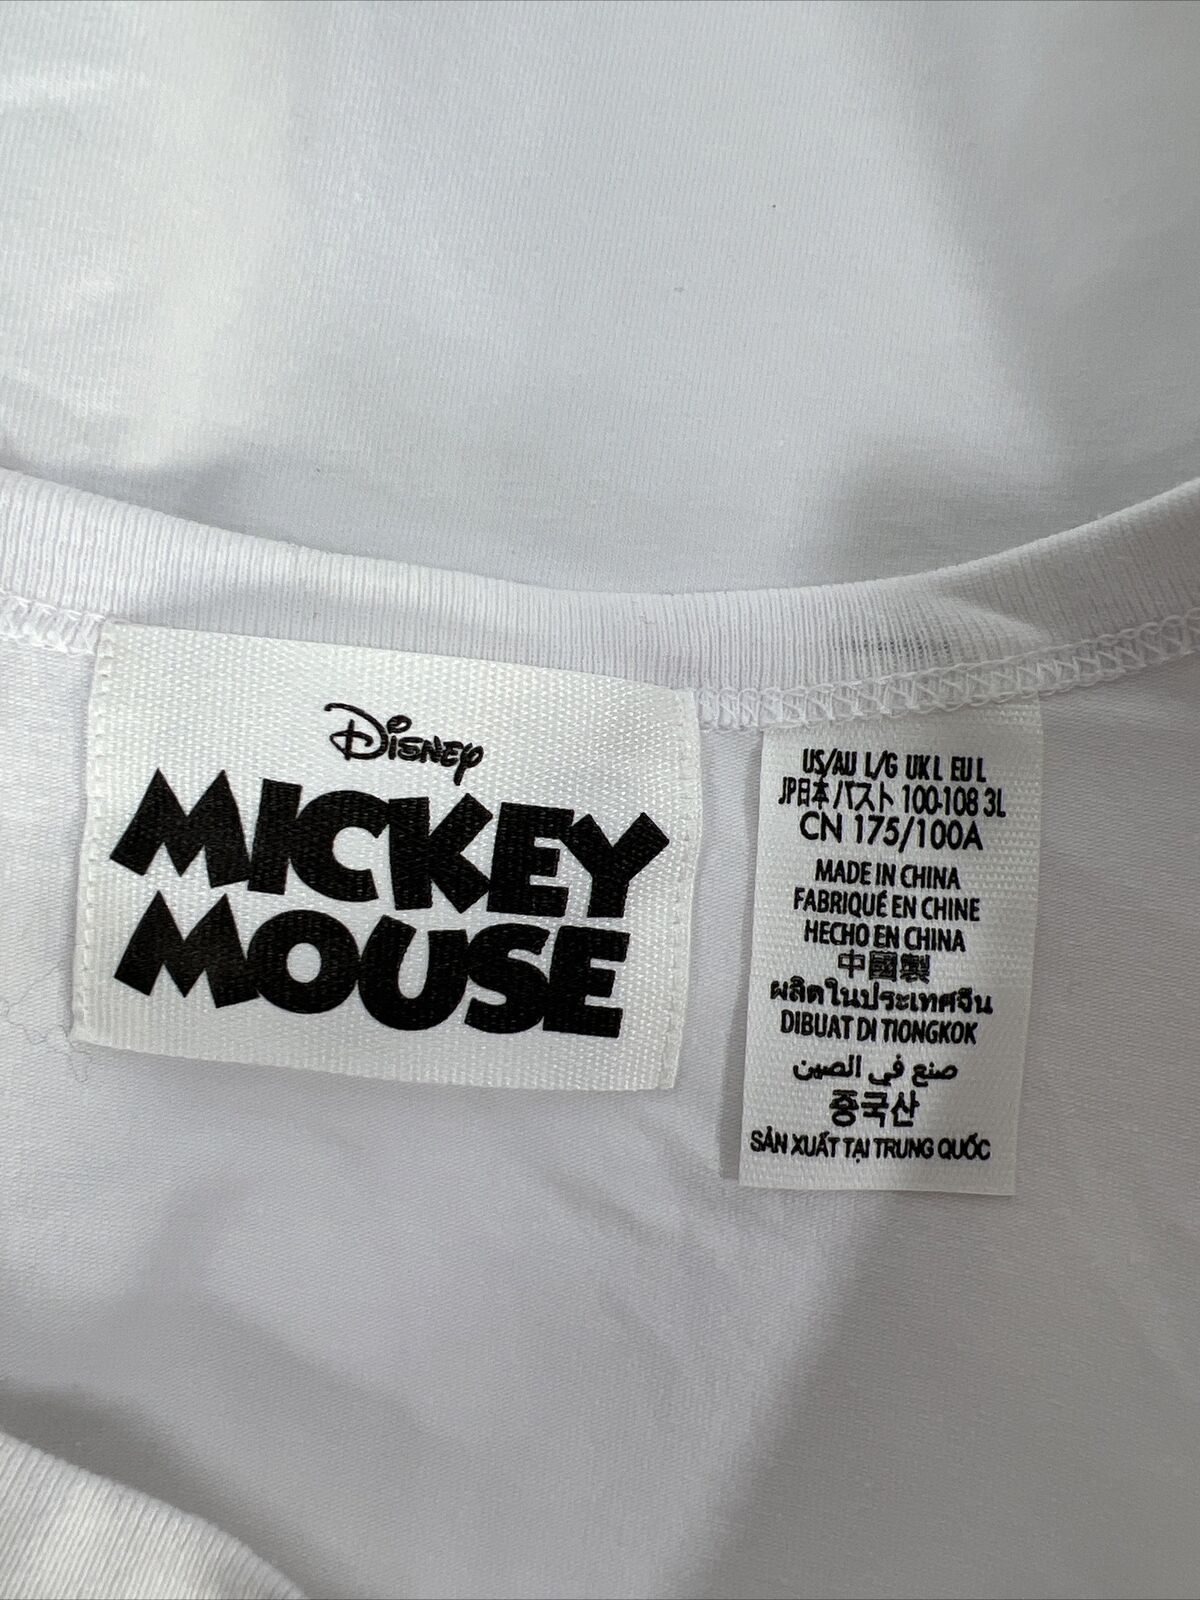 NUEVO Camiseta sin mangas sin mangas con gráfico de Mickey Mouse blanco para mujer de Disney Parks-L